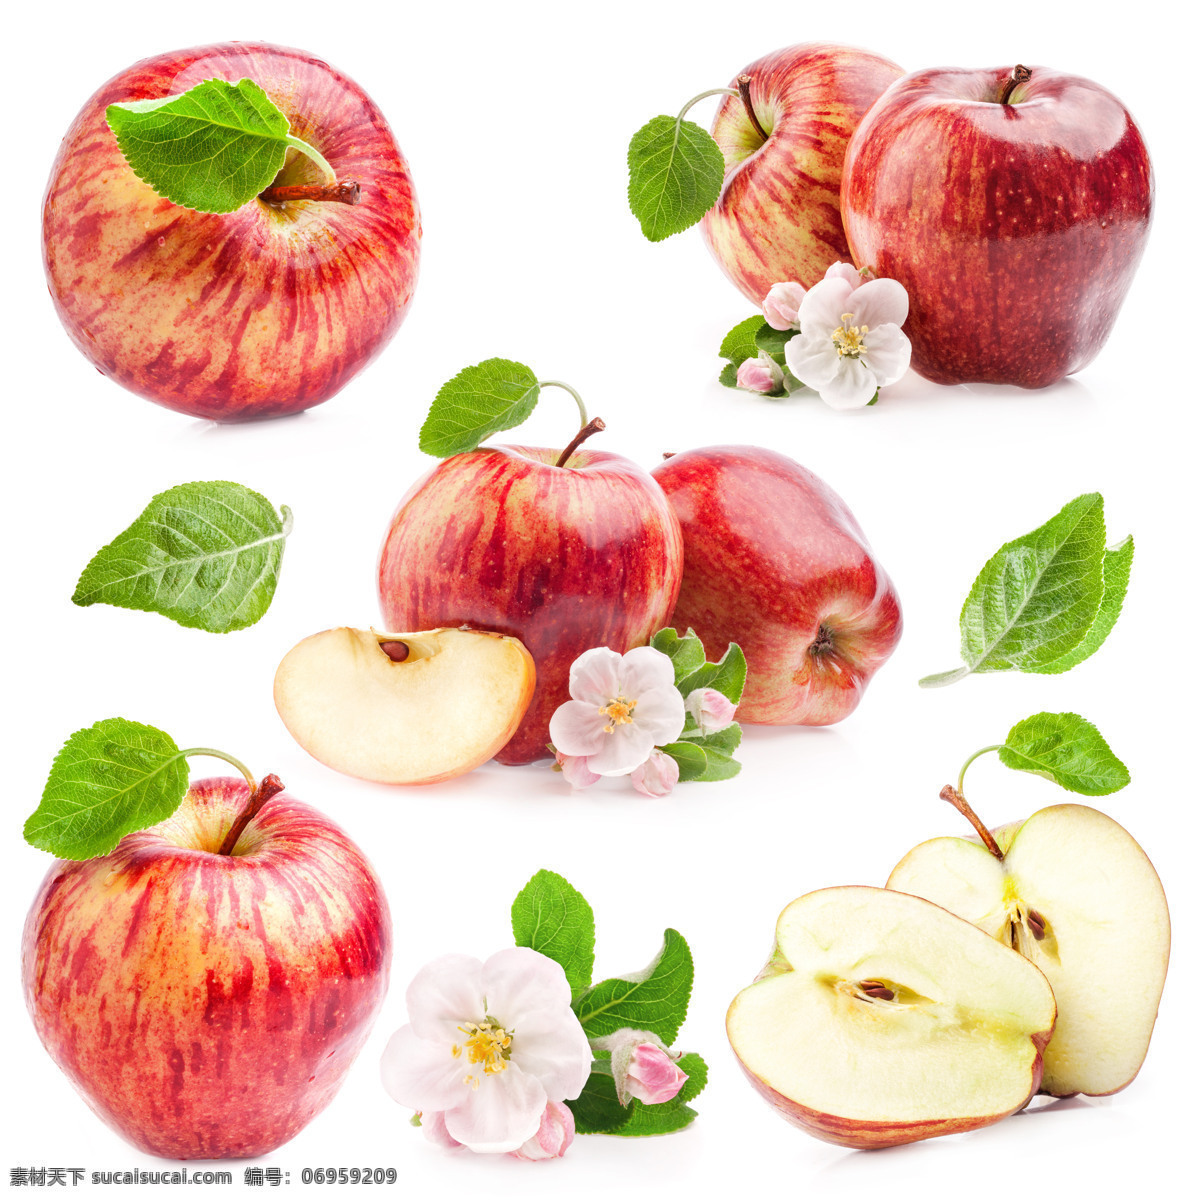 苹果 苹果花 红苹果 苹果切面 组合 新鲜苹果 新鲜水果 水果摄影 水果蔬菜 餐饮美食 白色